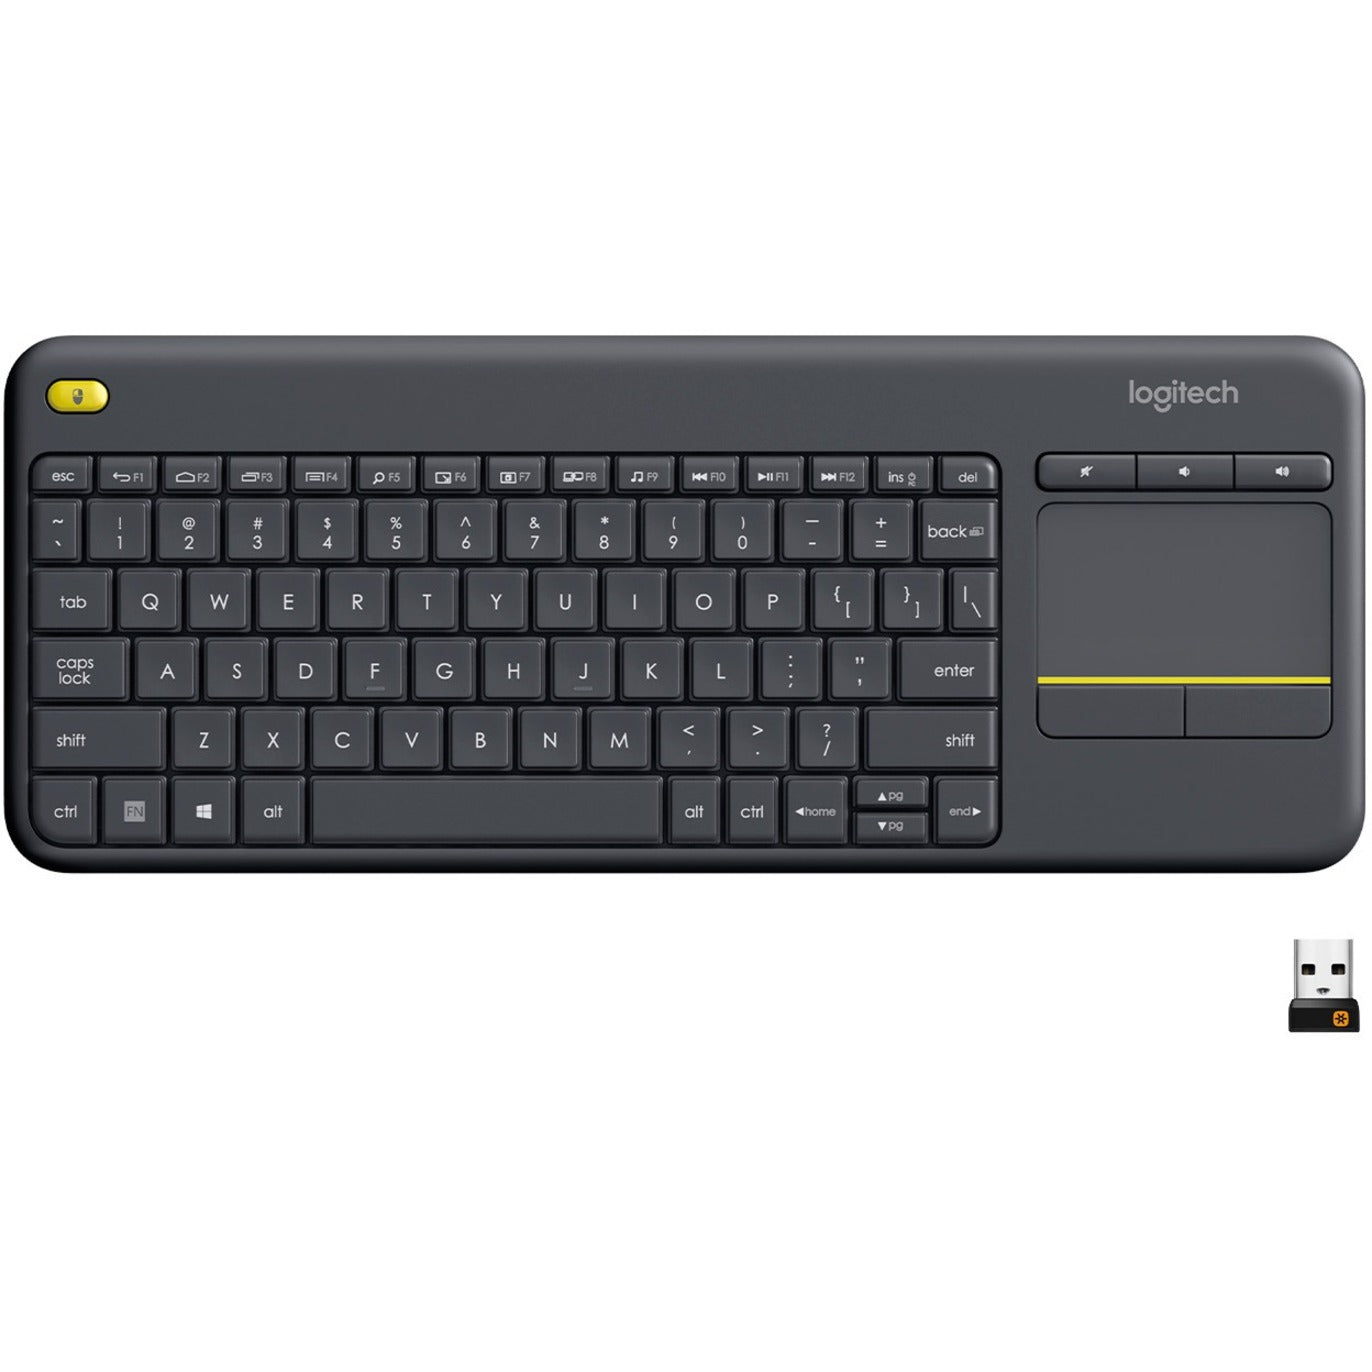 罗技 920-007119 K400 Plus 触摸板无线键盘，黑色 - 音量控制，QWERTY布局 罗技 - Logitech